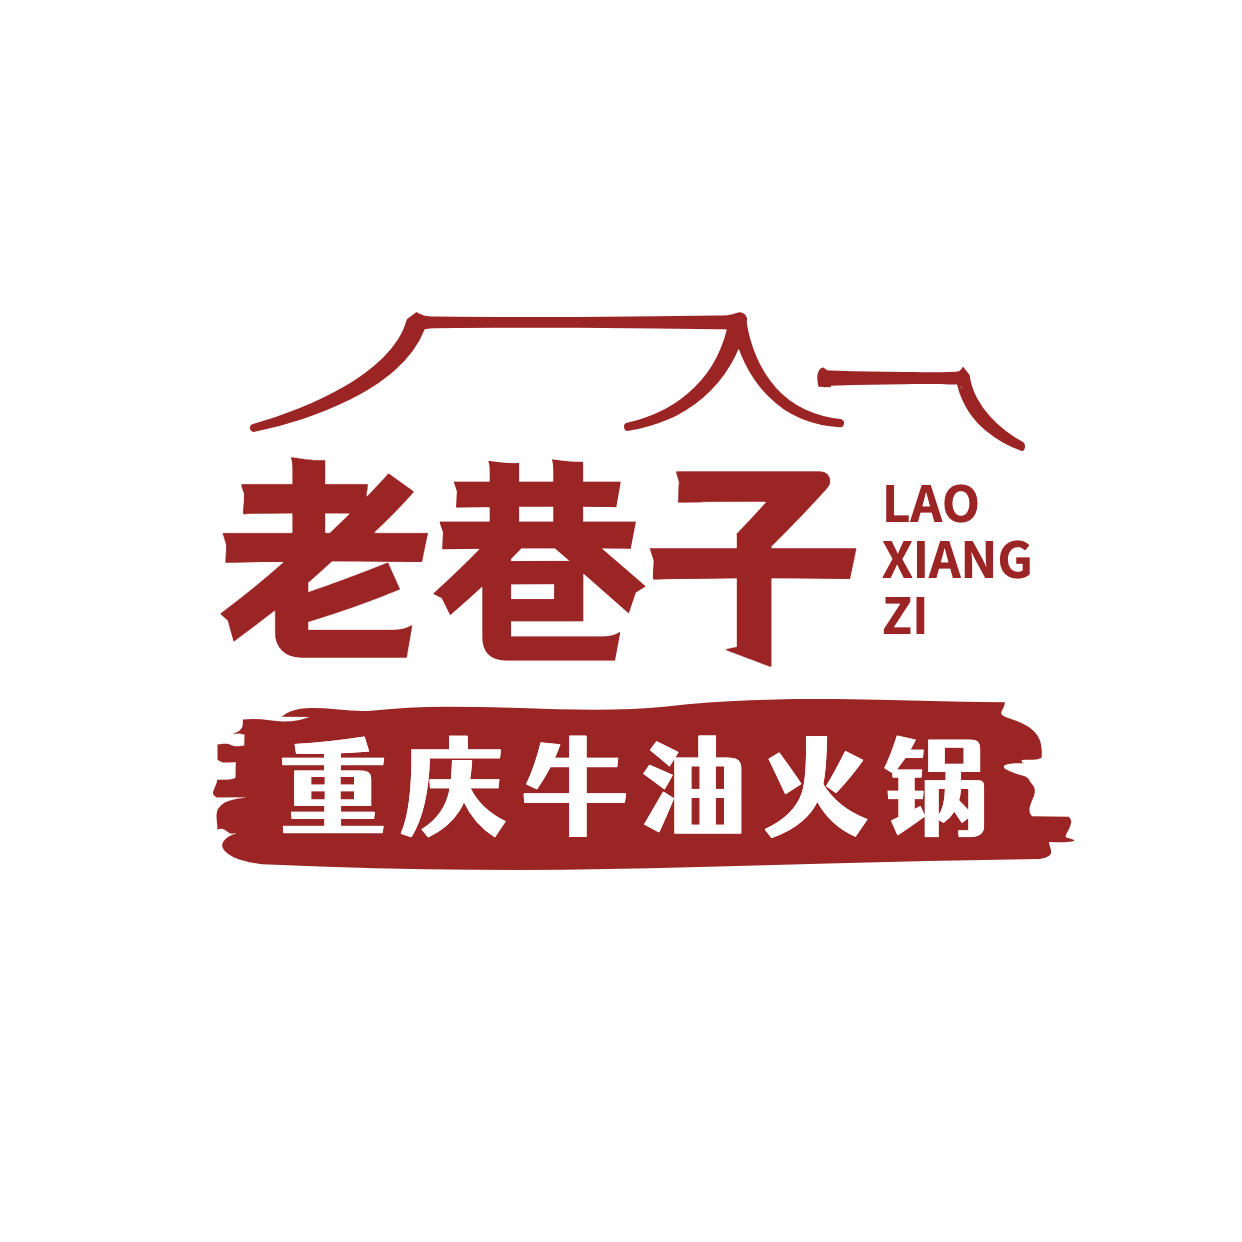 火锅中餐品牌宣传LOGO简约微信头像